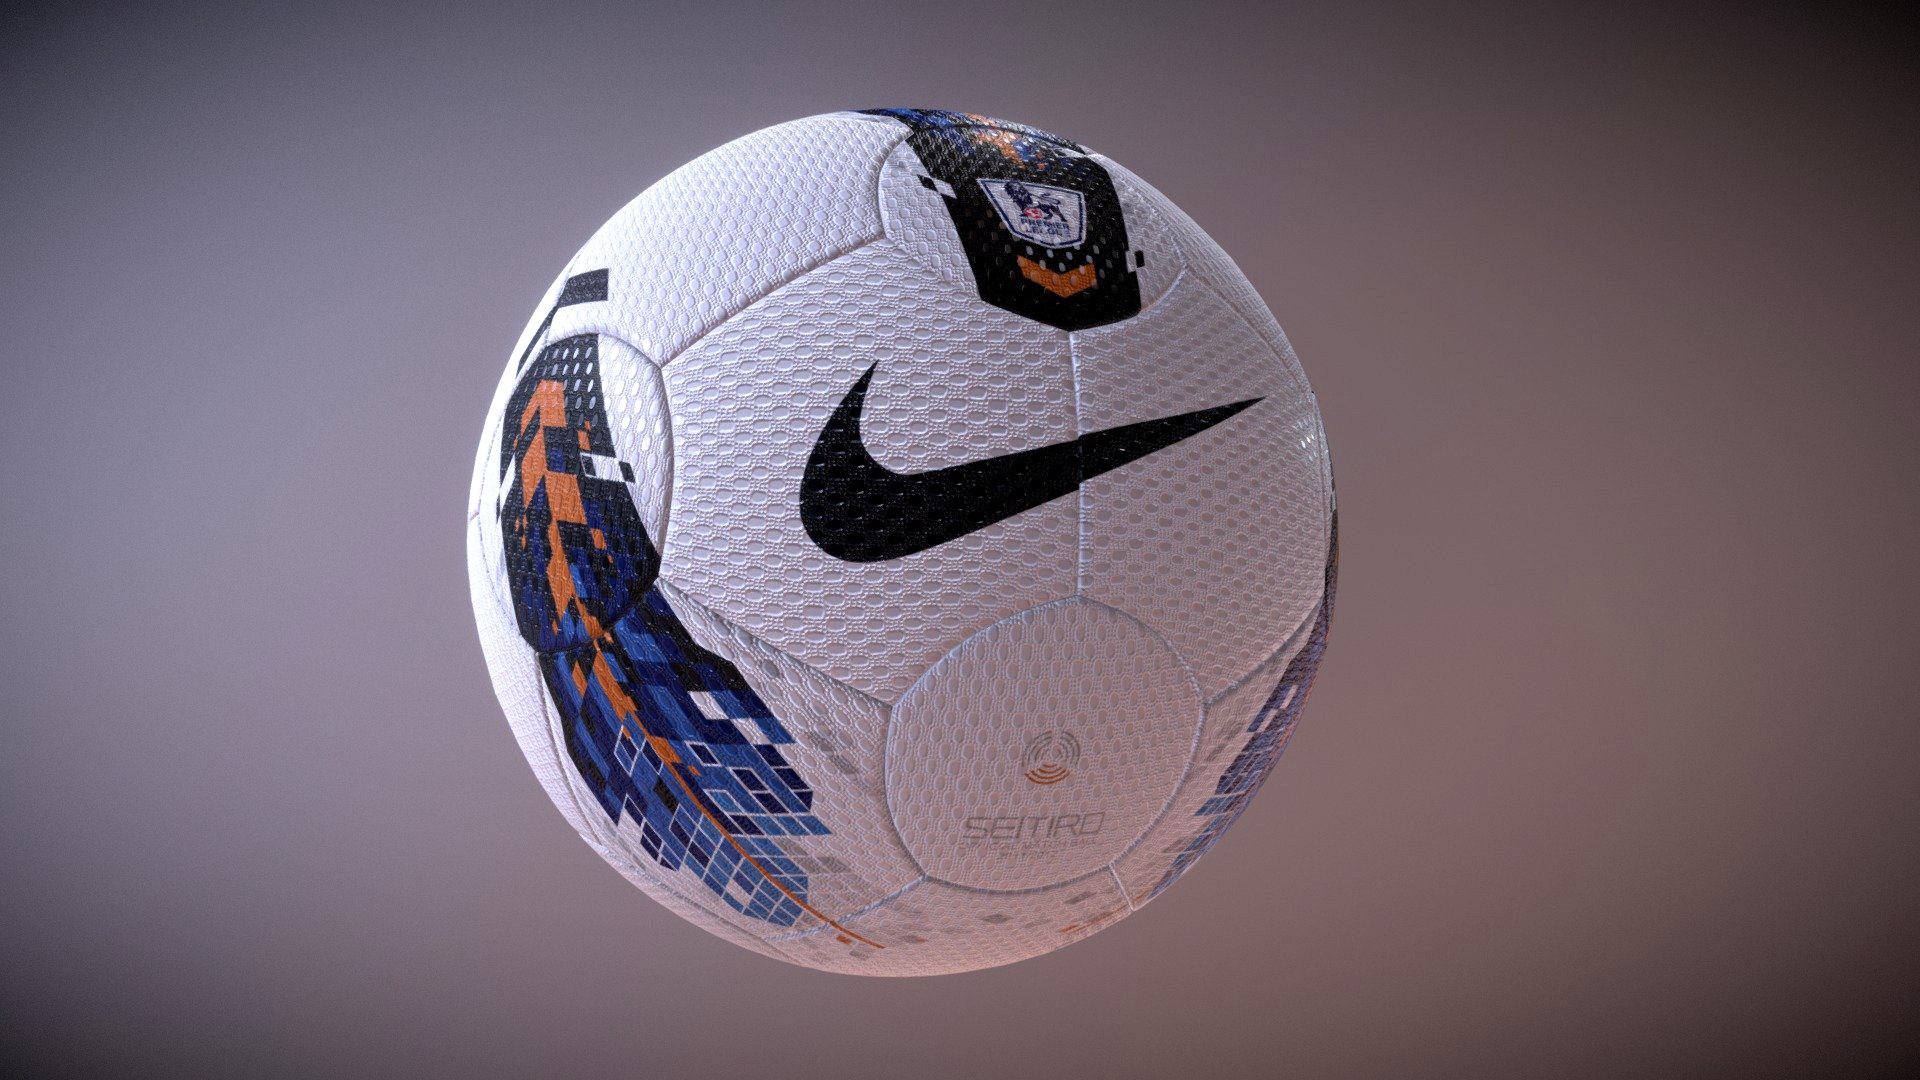 Nike Seitiro Ball